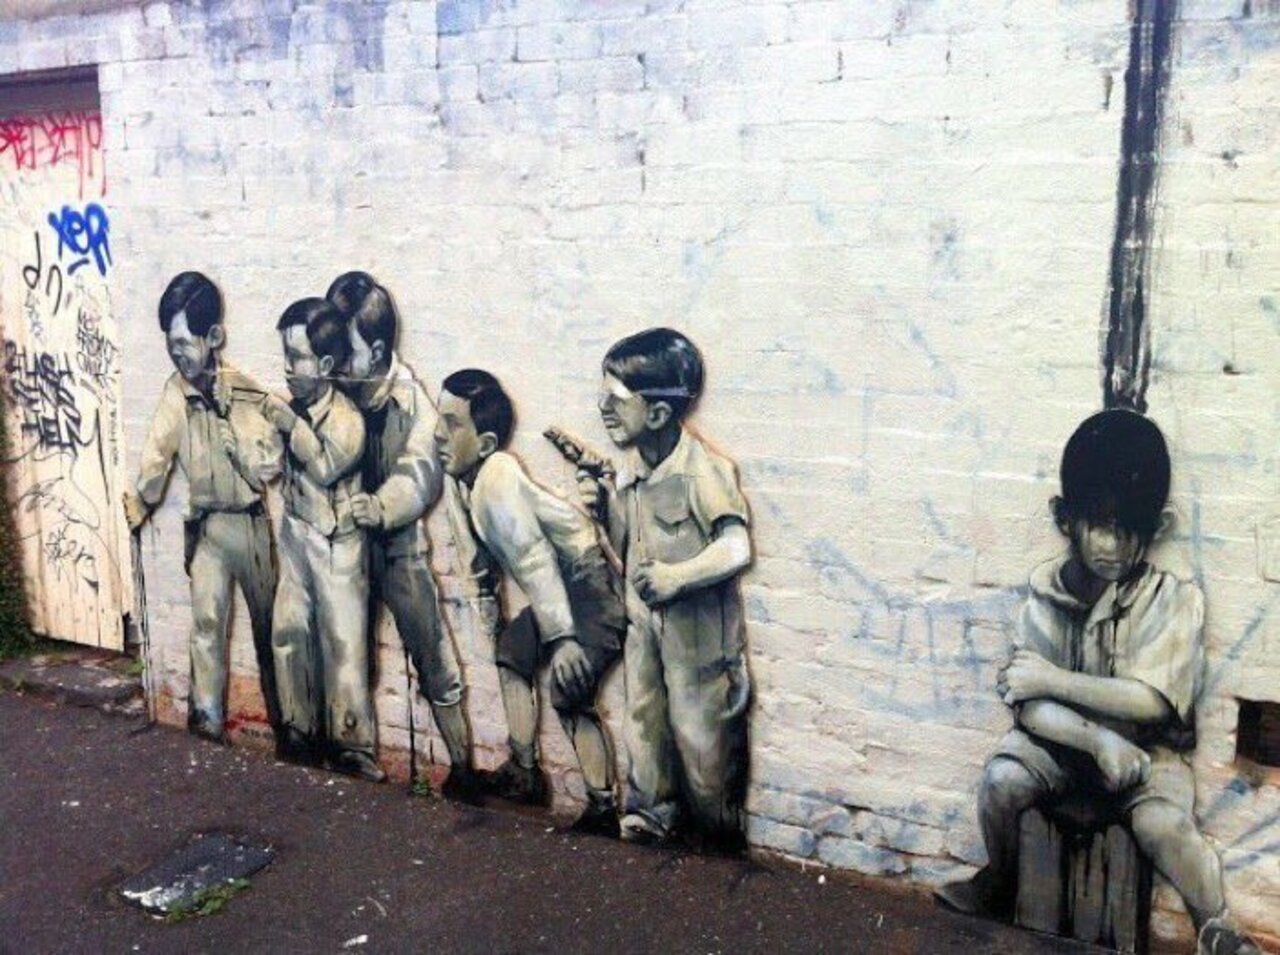 #Mural by Taylor White #Melbourne #Australia #Streetart #urbanart #graffiti #art https://t.co/qjZsN7ydaV